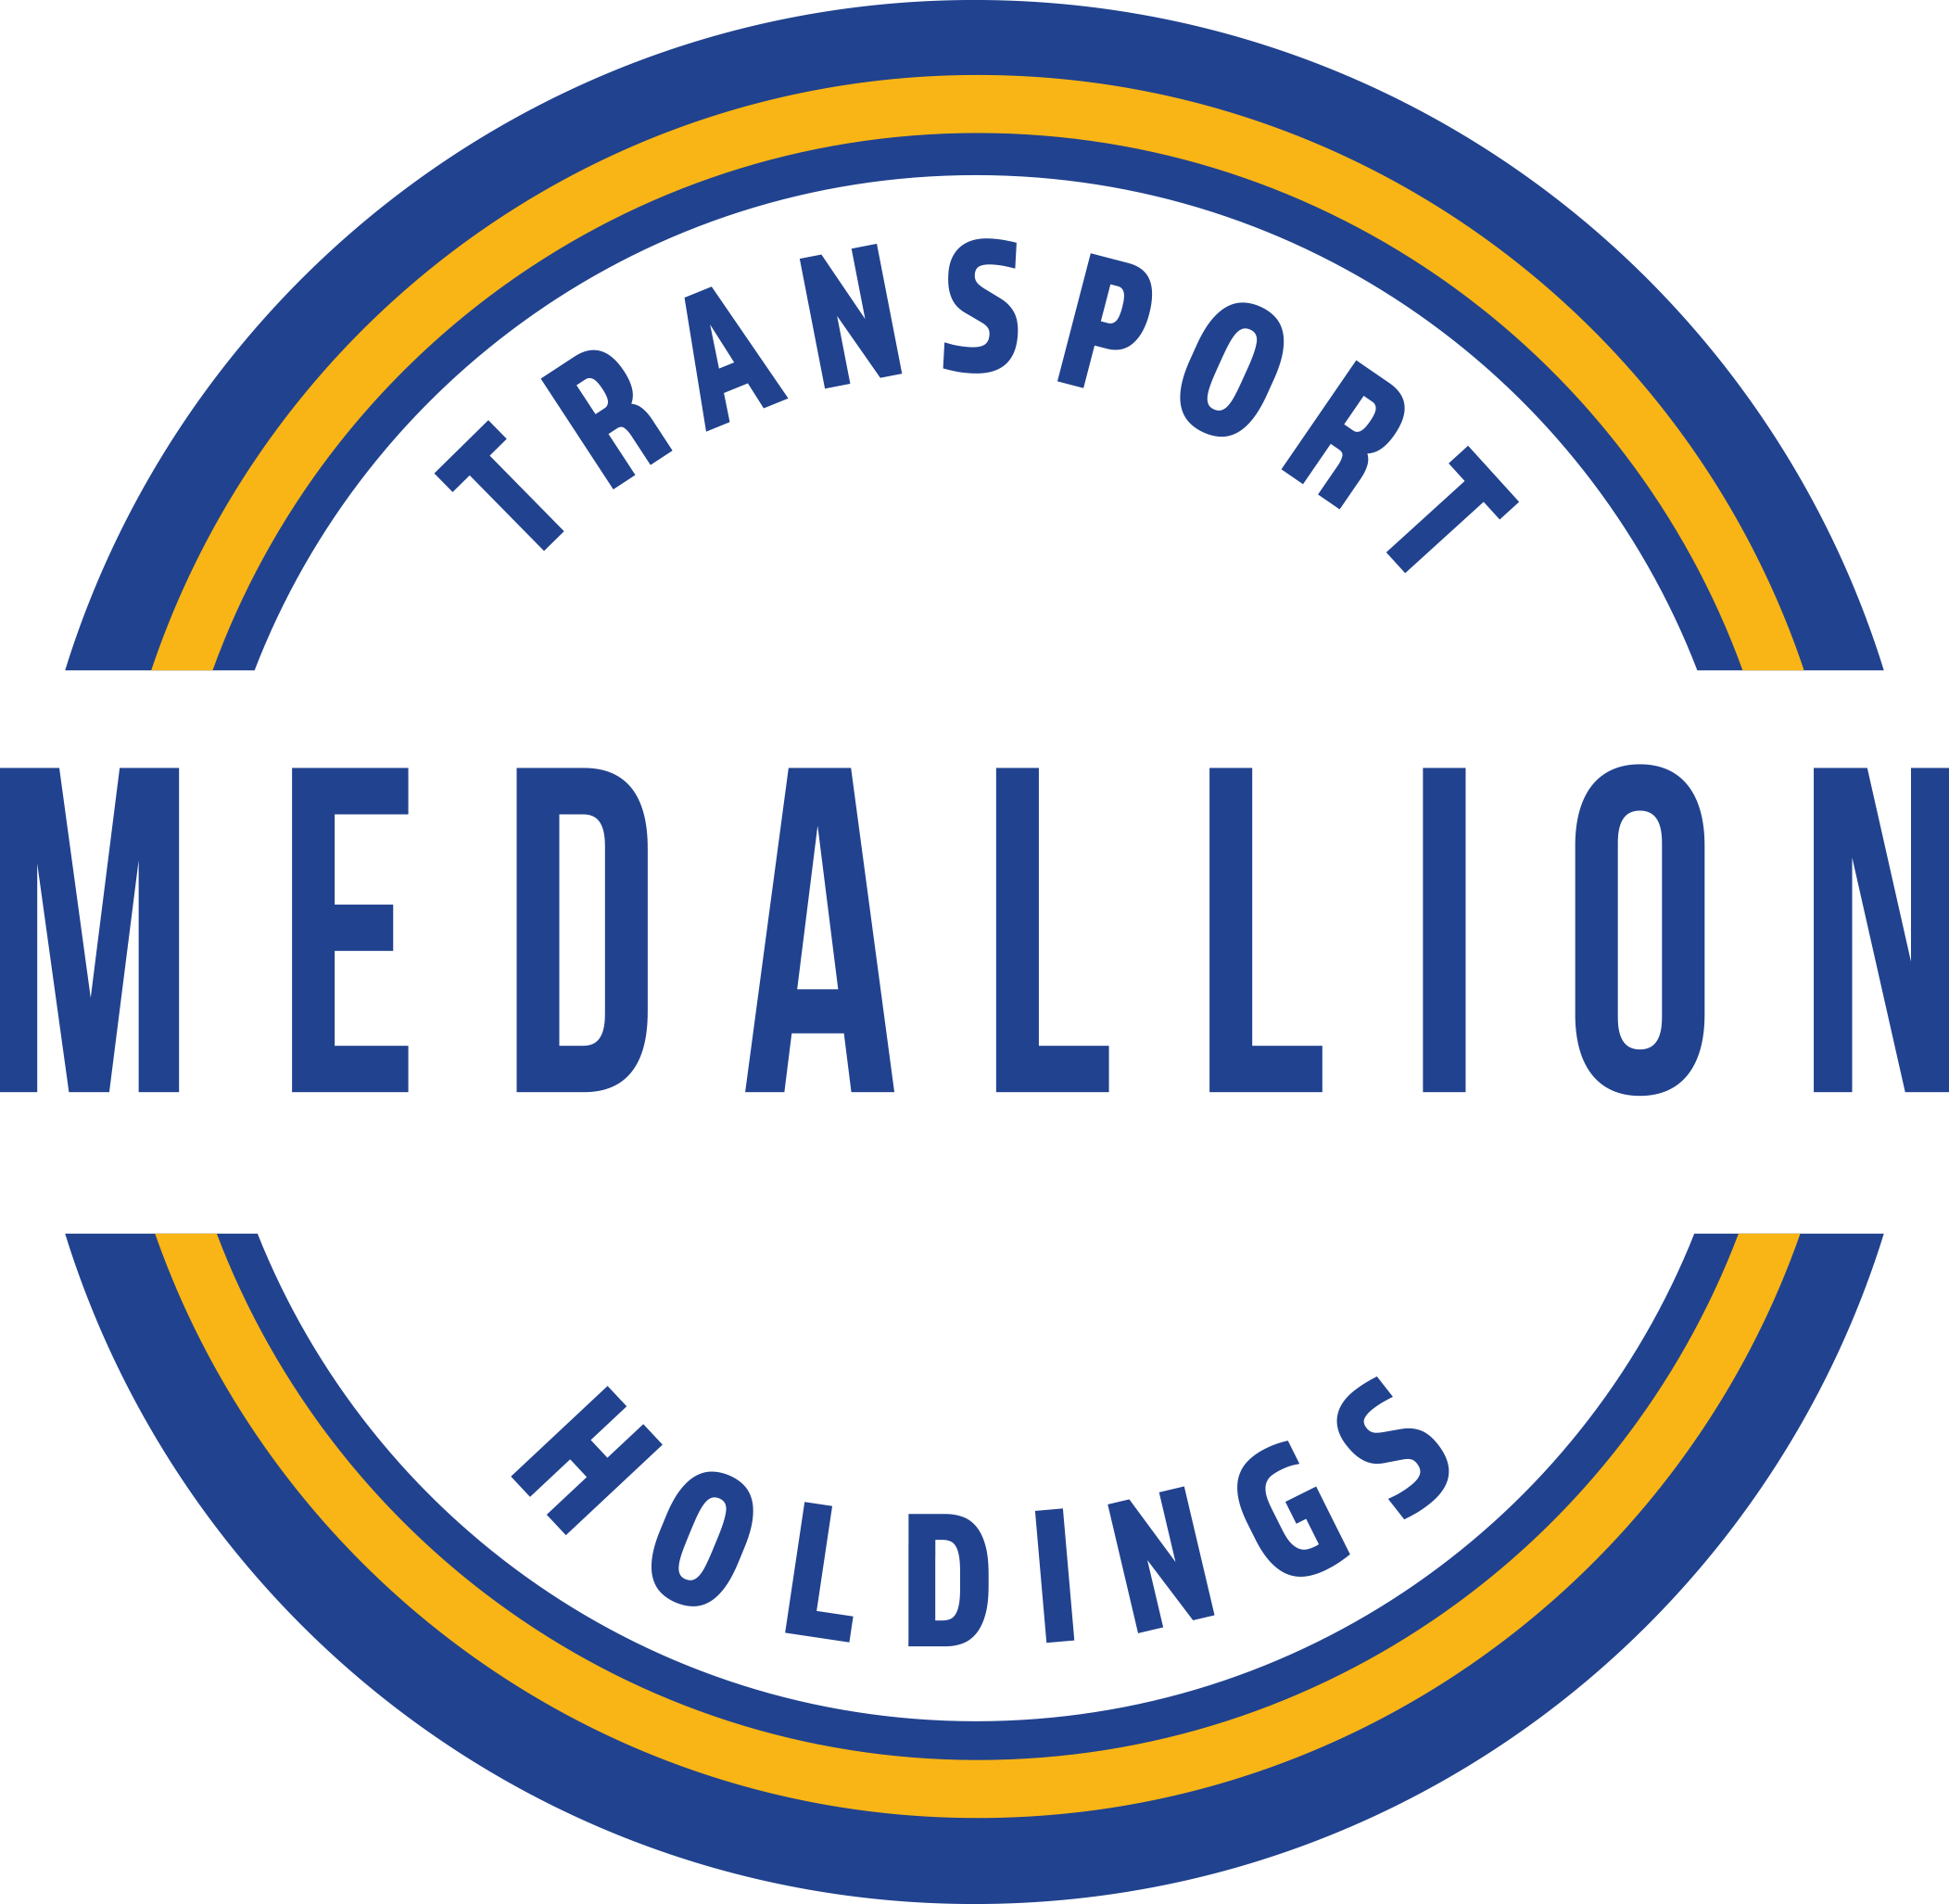 Medallion Transport Holdings